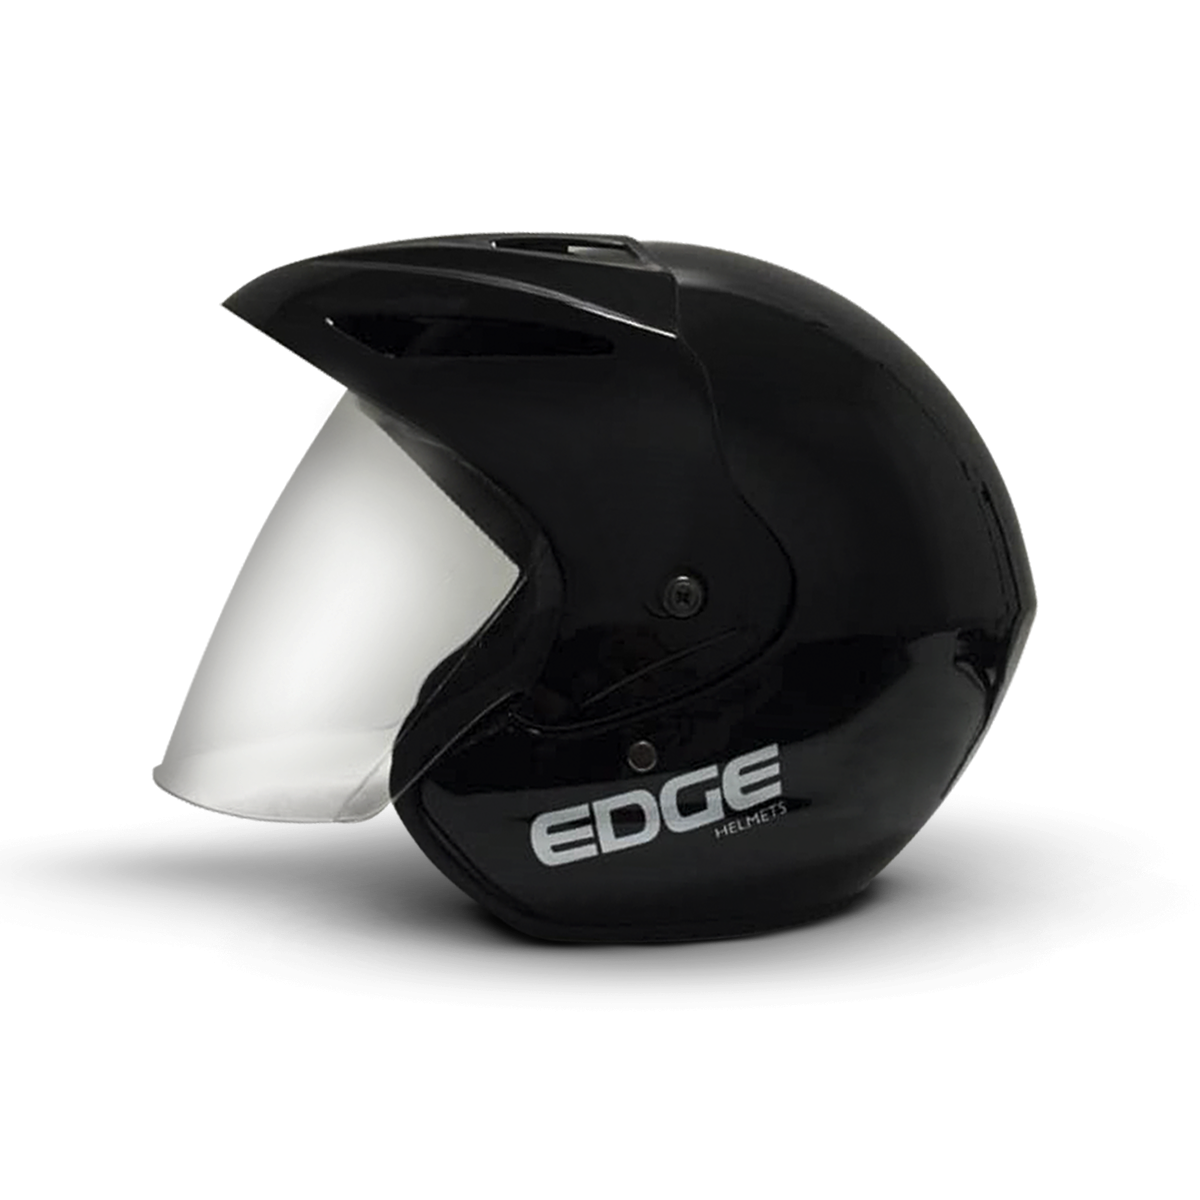 Casco Motocicleta Completo Integral Marca Edge Laser Cerrado Visor